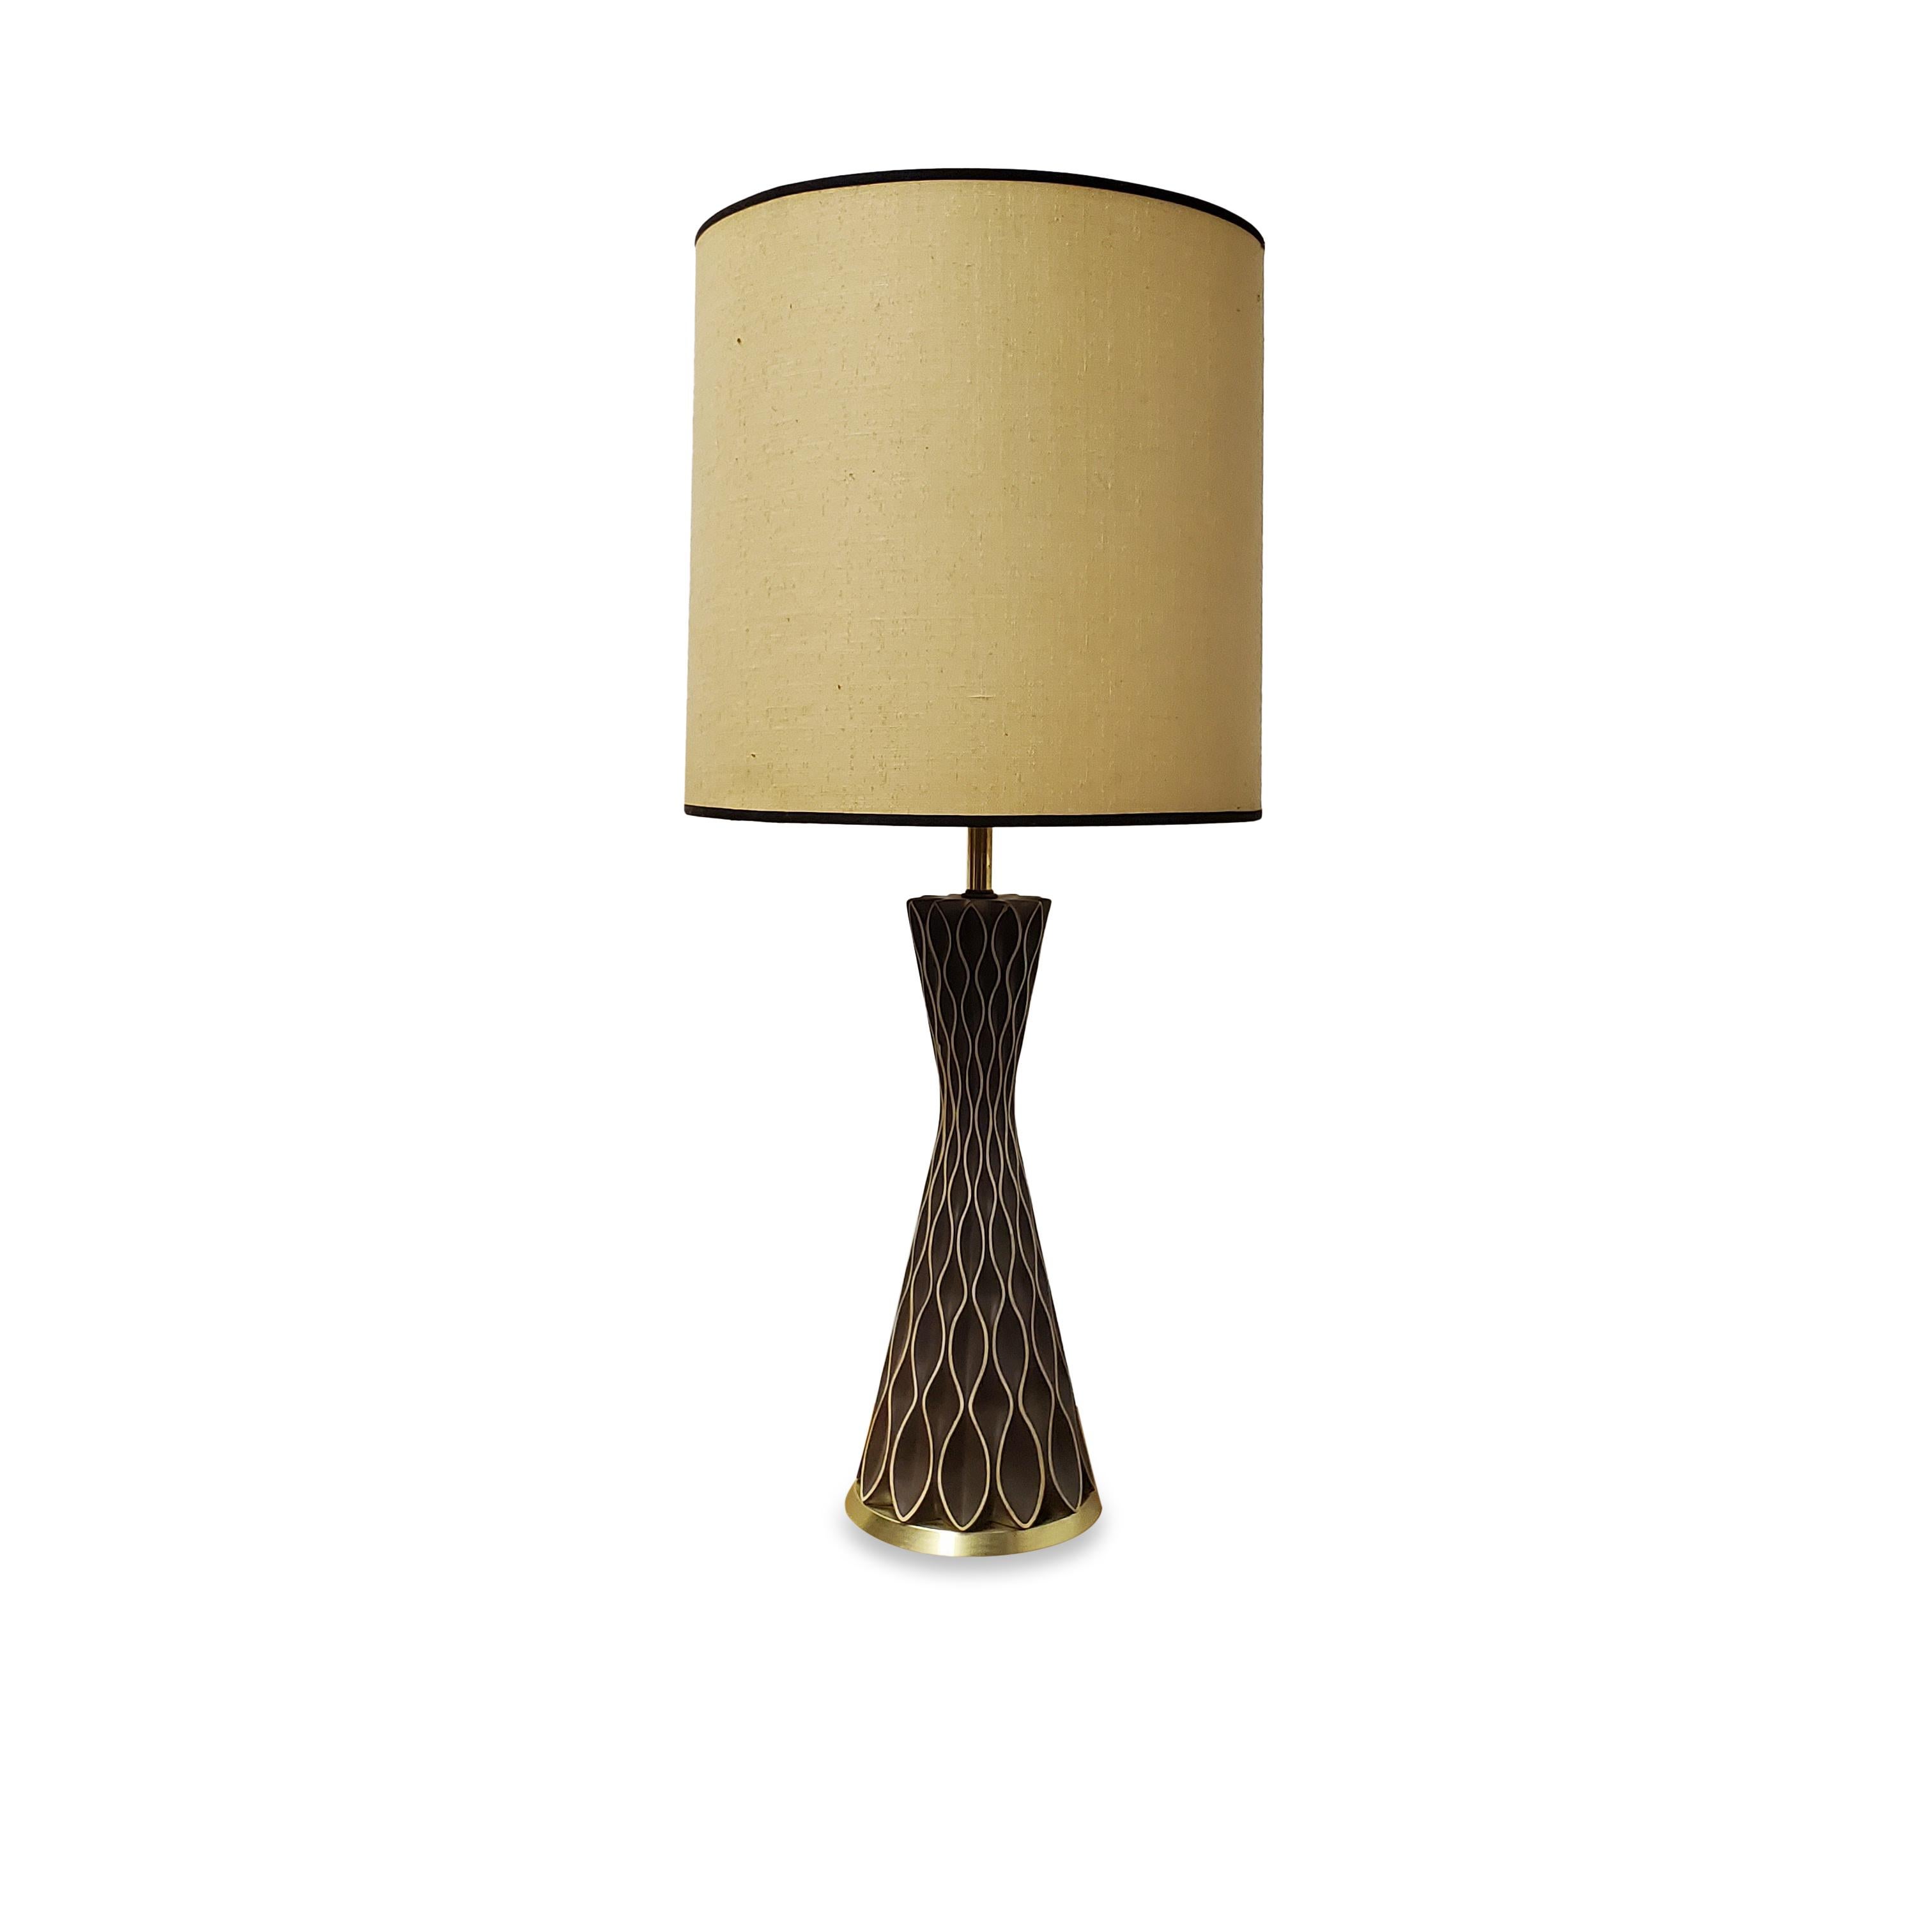 Brass Gerald Thurston For Lightolier Honeycomb Table Lamp 